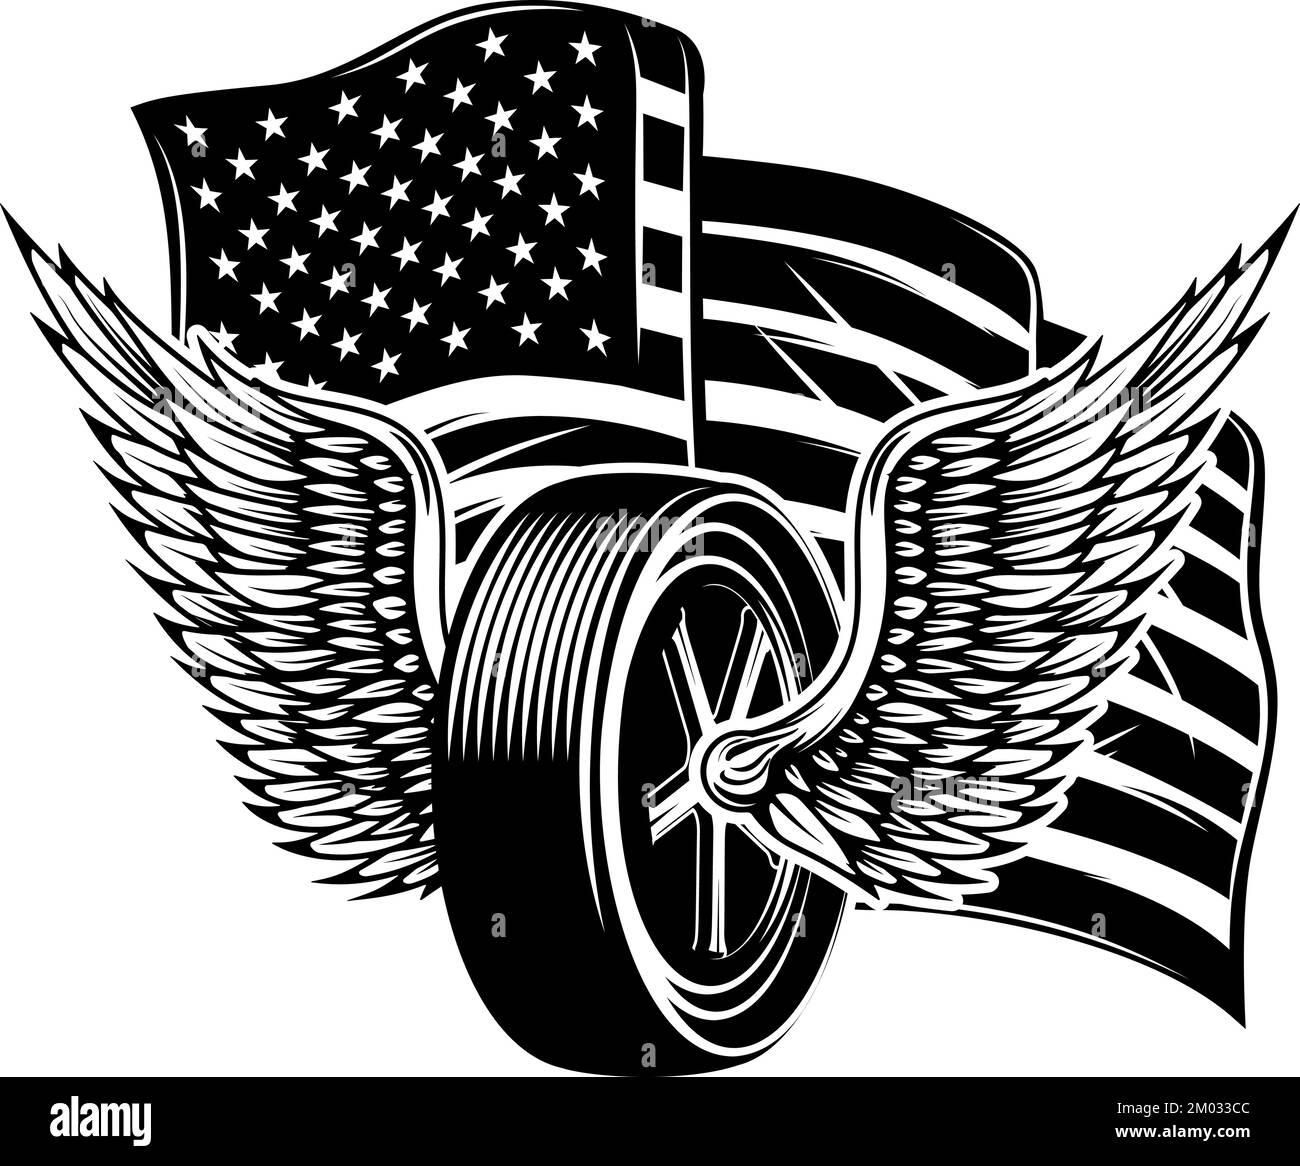 Illustration of winged wheel on american flag background. Design element for poster, card, banner, sign, emblem. Vector illustration Stock Vector